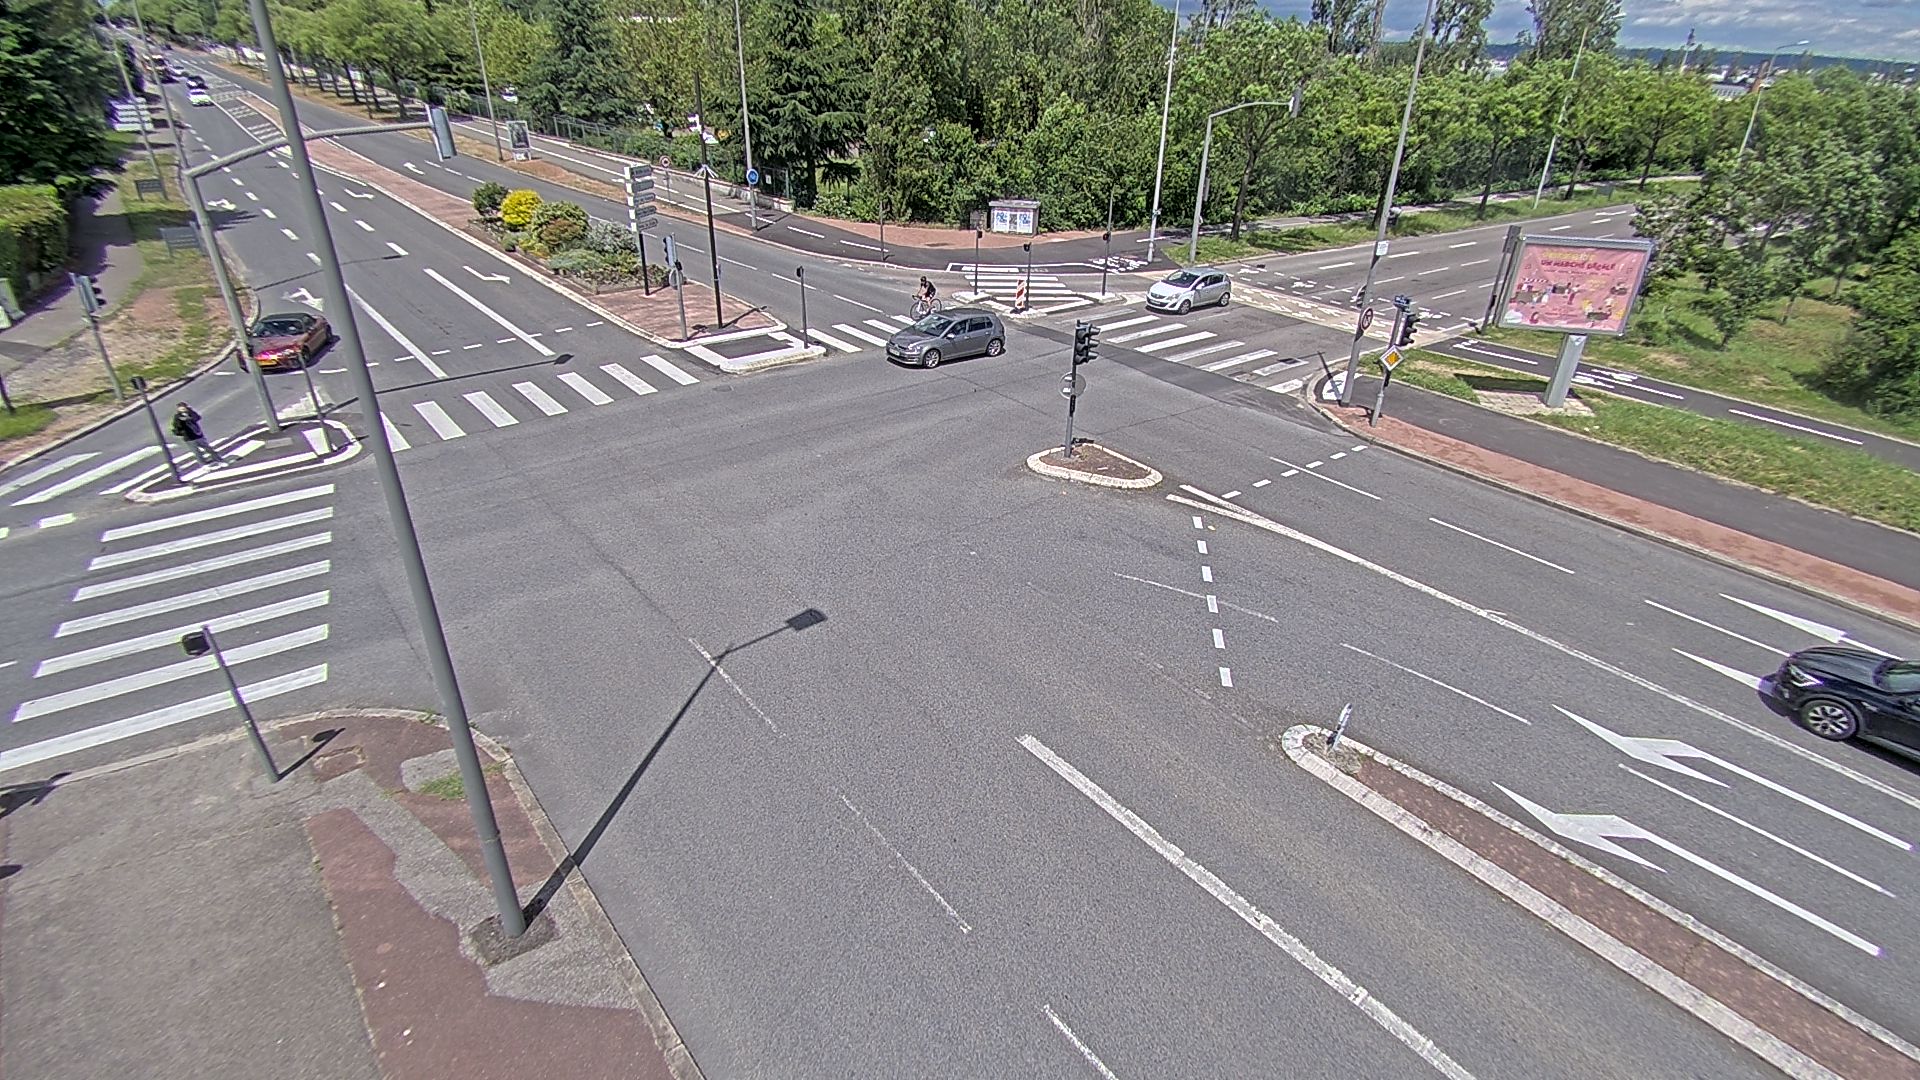 <h2>Webcam proche de l'A43 à Bron à la jonction entre le Boulevard de l'Université (D112) et l'avenue Général de Gaulle (D506). Vue orientée vers Eurexpo</h2>